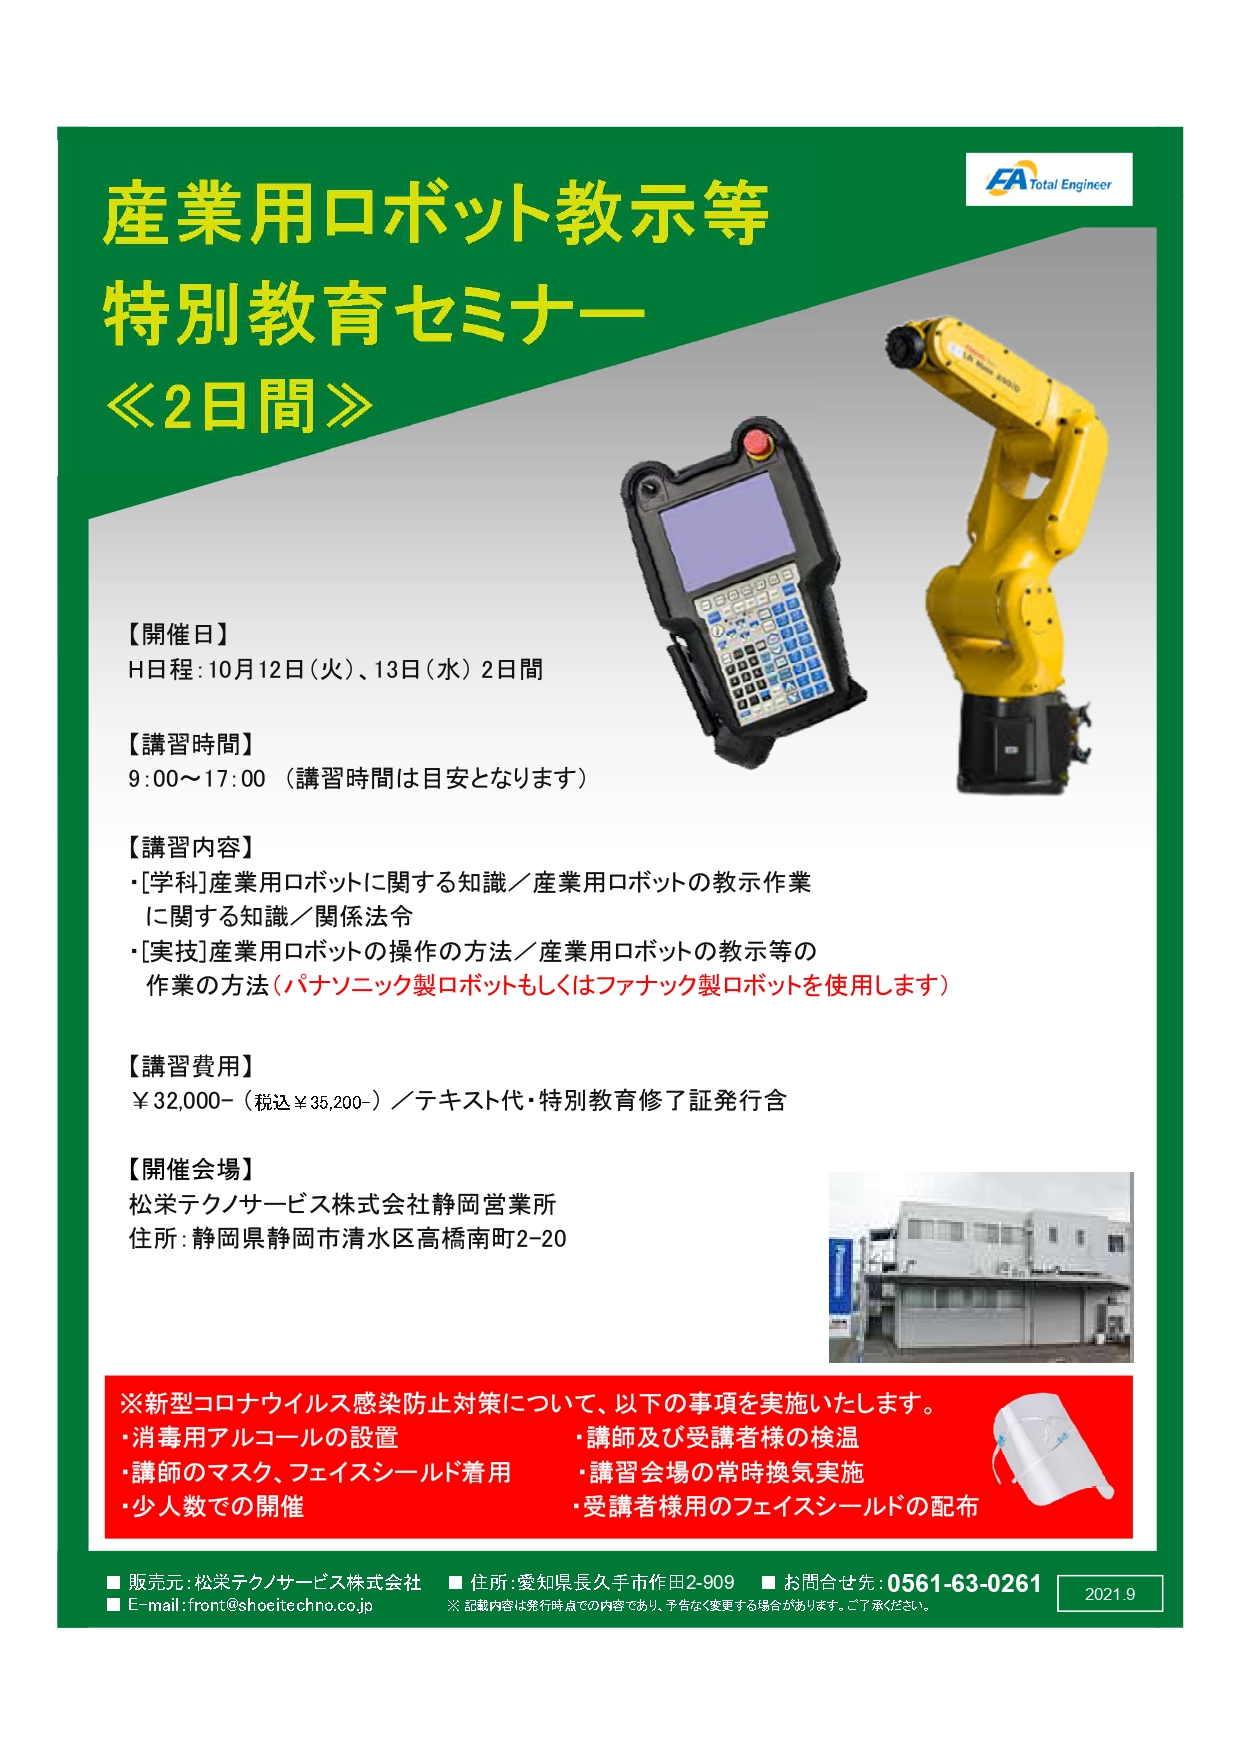 【終了しました】産業用ロボット特別教育（教示等）静岡会場開催のお知らせ【2021年11月】